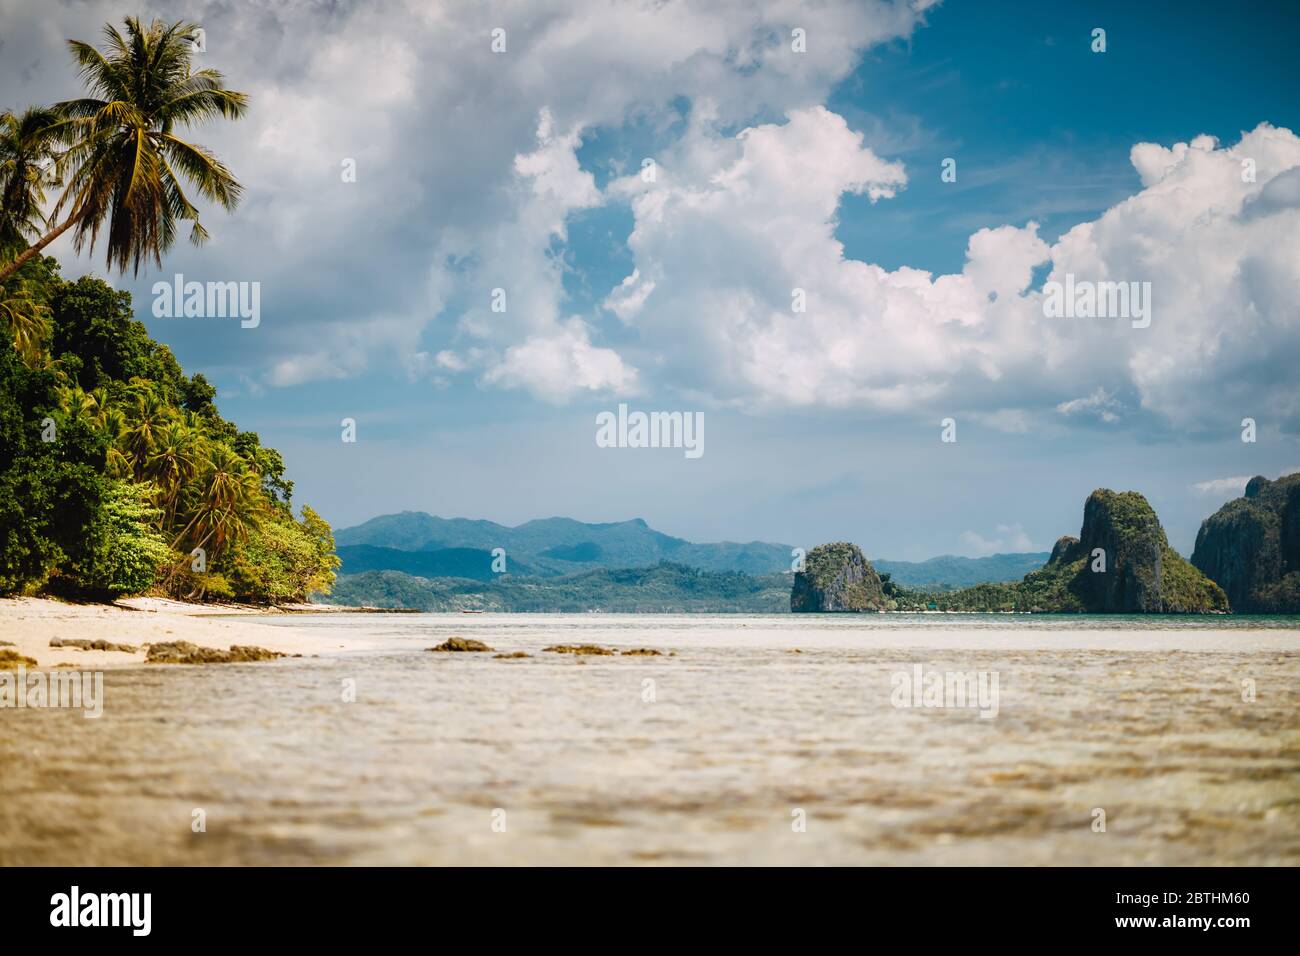 El Nido, Palawan, Filippine. Paesaggio tropicale scenico di laguna poco profonda, spiaggia sabbiosa con palme. Isole esotiche e paesaggi bianchi Foto Stock